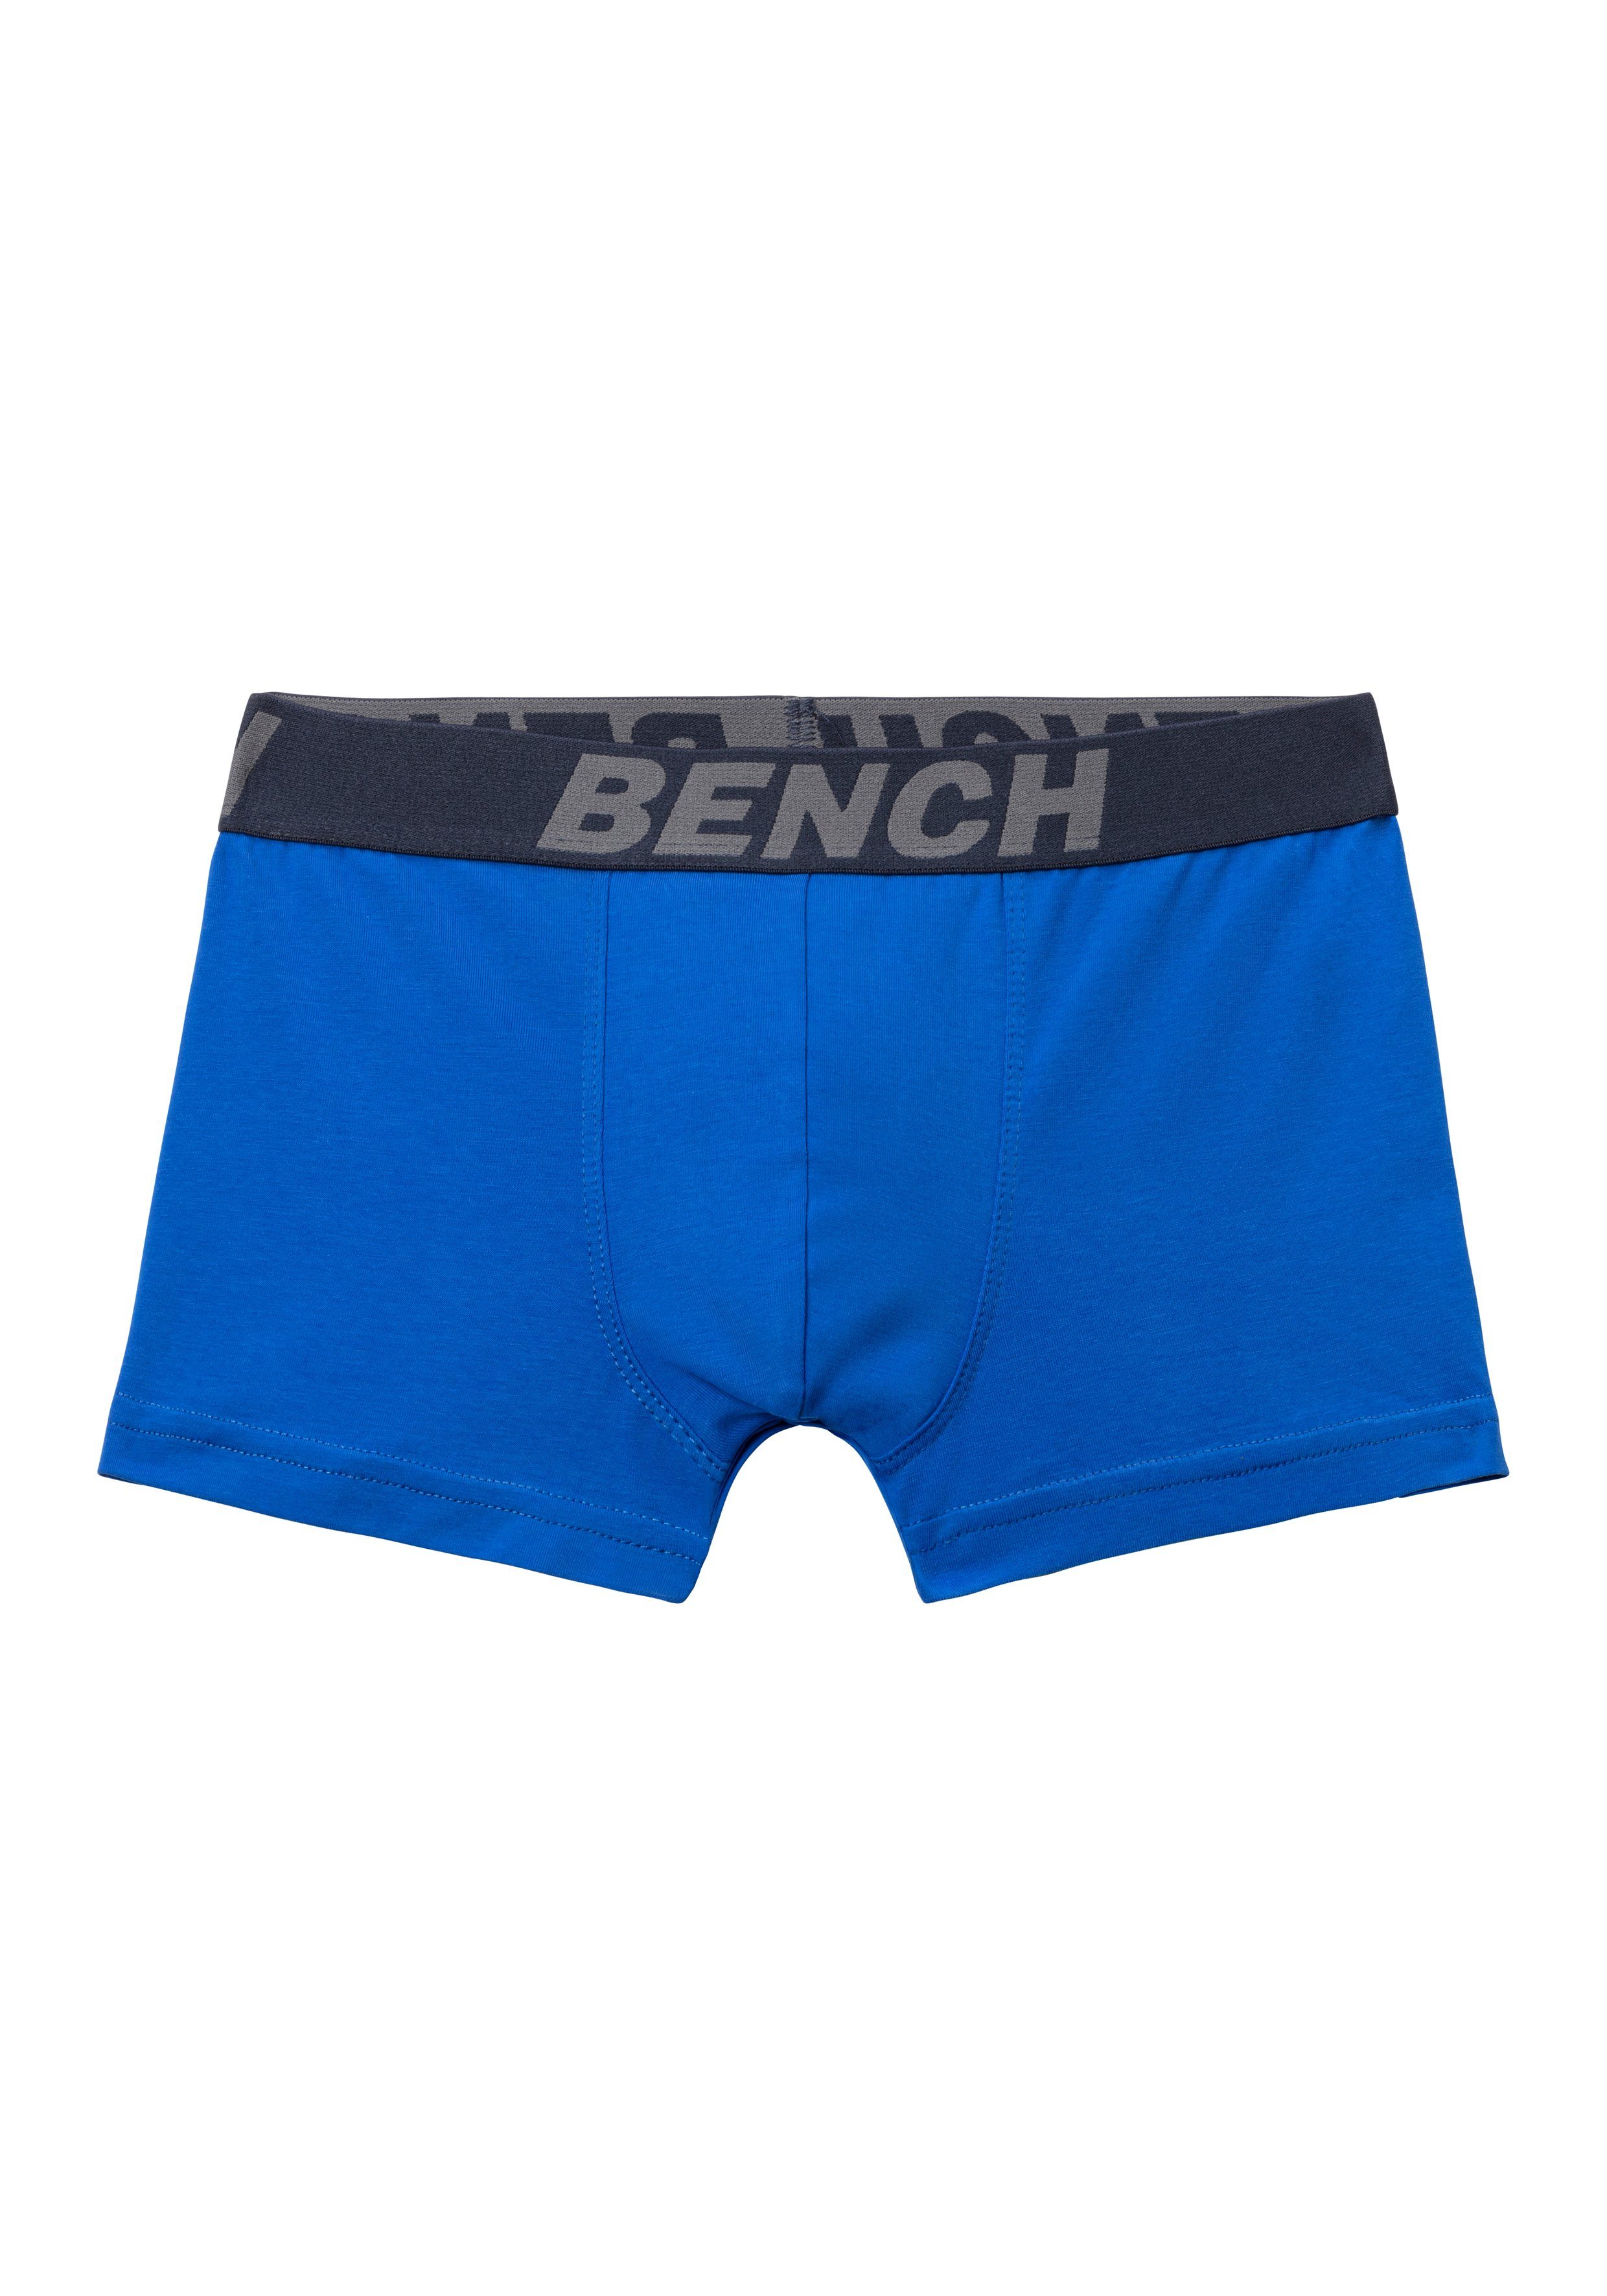 Bench. Boxer (Packung, 4-St) rot, für Bench blau, mit Bund Schriftzug im grau-meliert weiß, Jungen